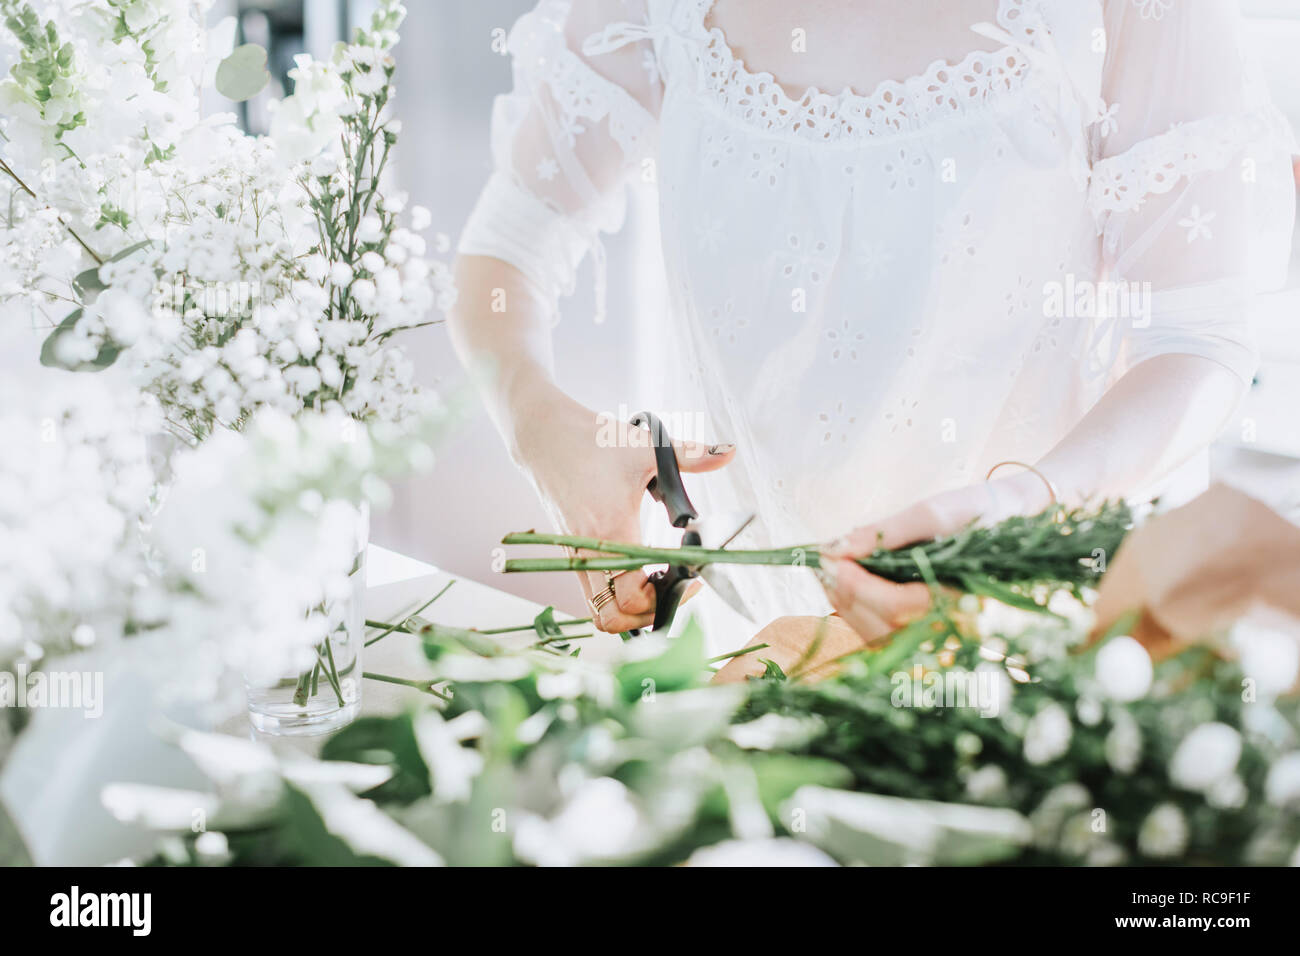 Jeune femme en robe blanche des fleurs blanches, mid section Banque D'Images